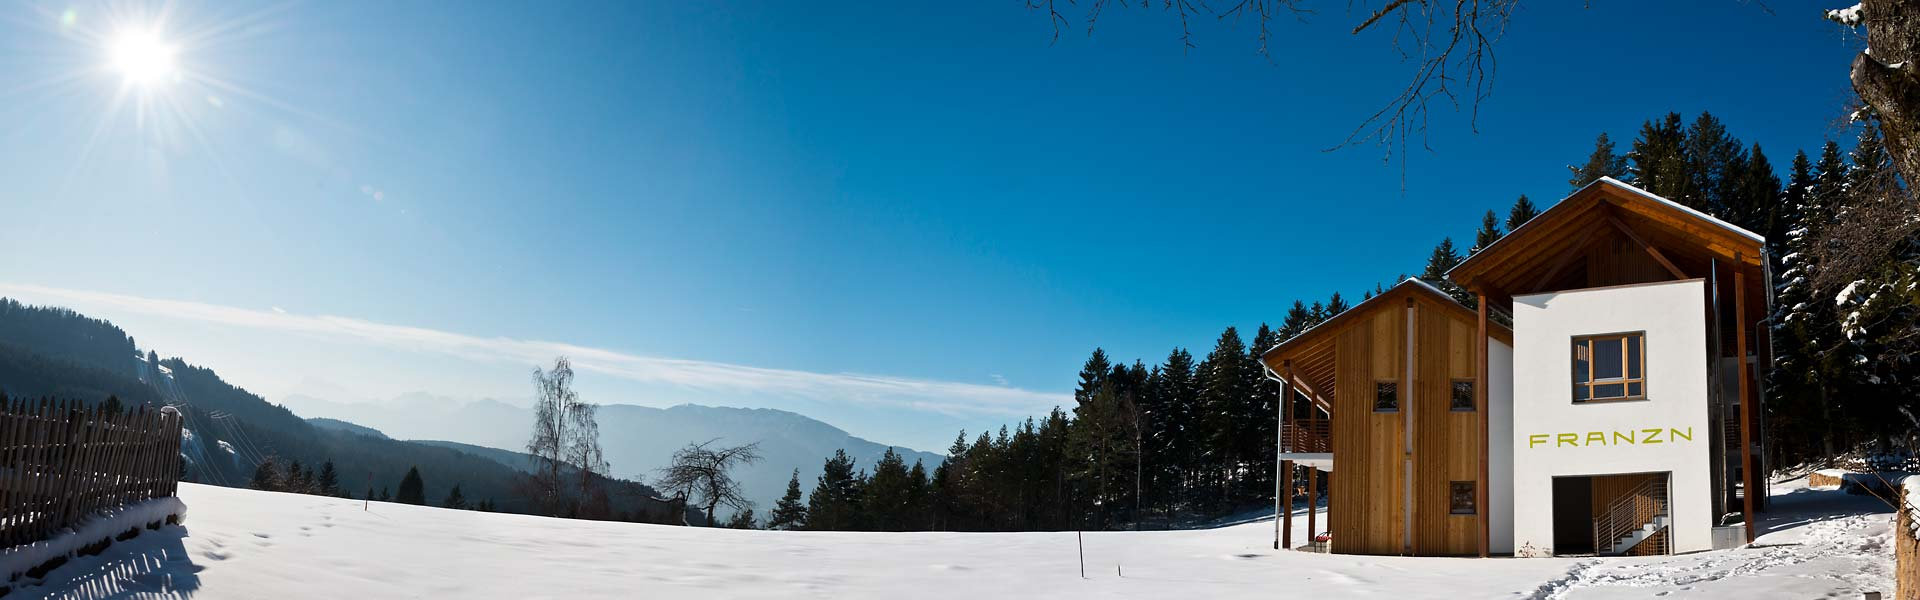 Traumhaftes Winterpanorama in den Dolomiten